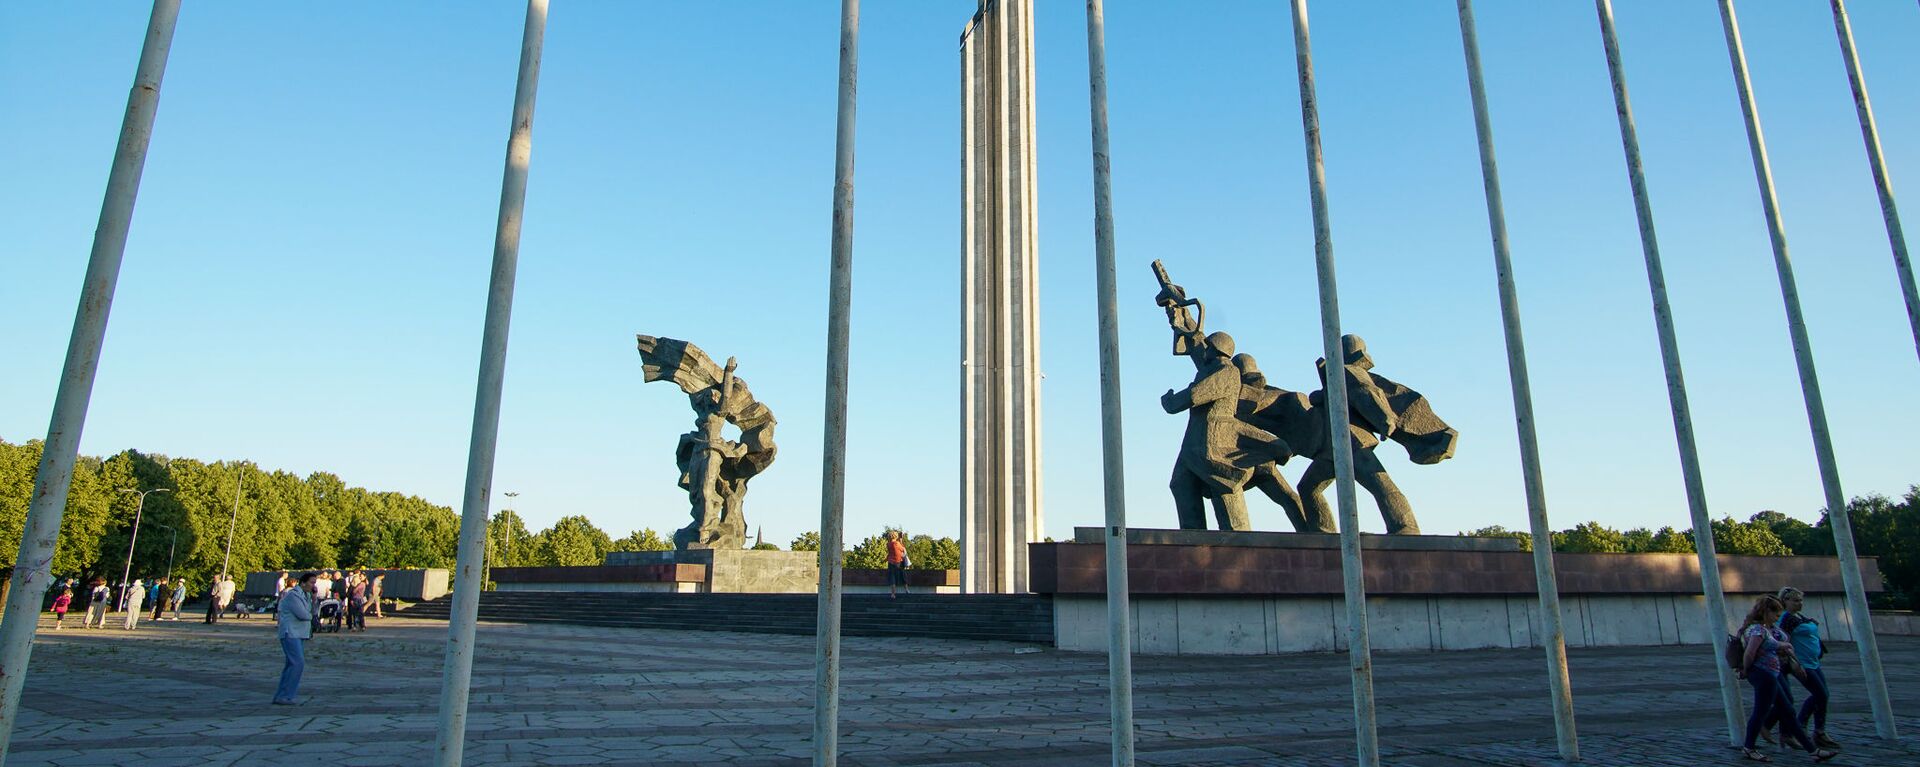 Памятник Освободителям Риги - Sputnik Латвия, 1920, 08.05.2021